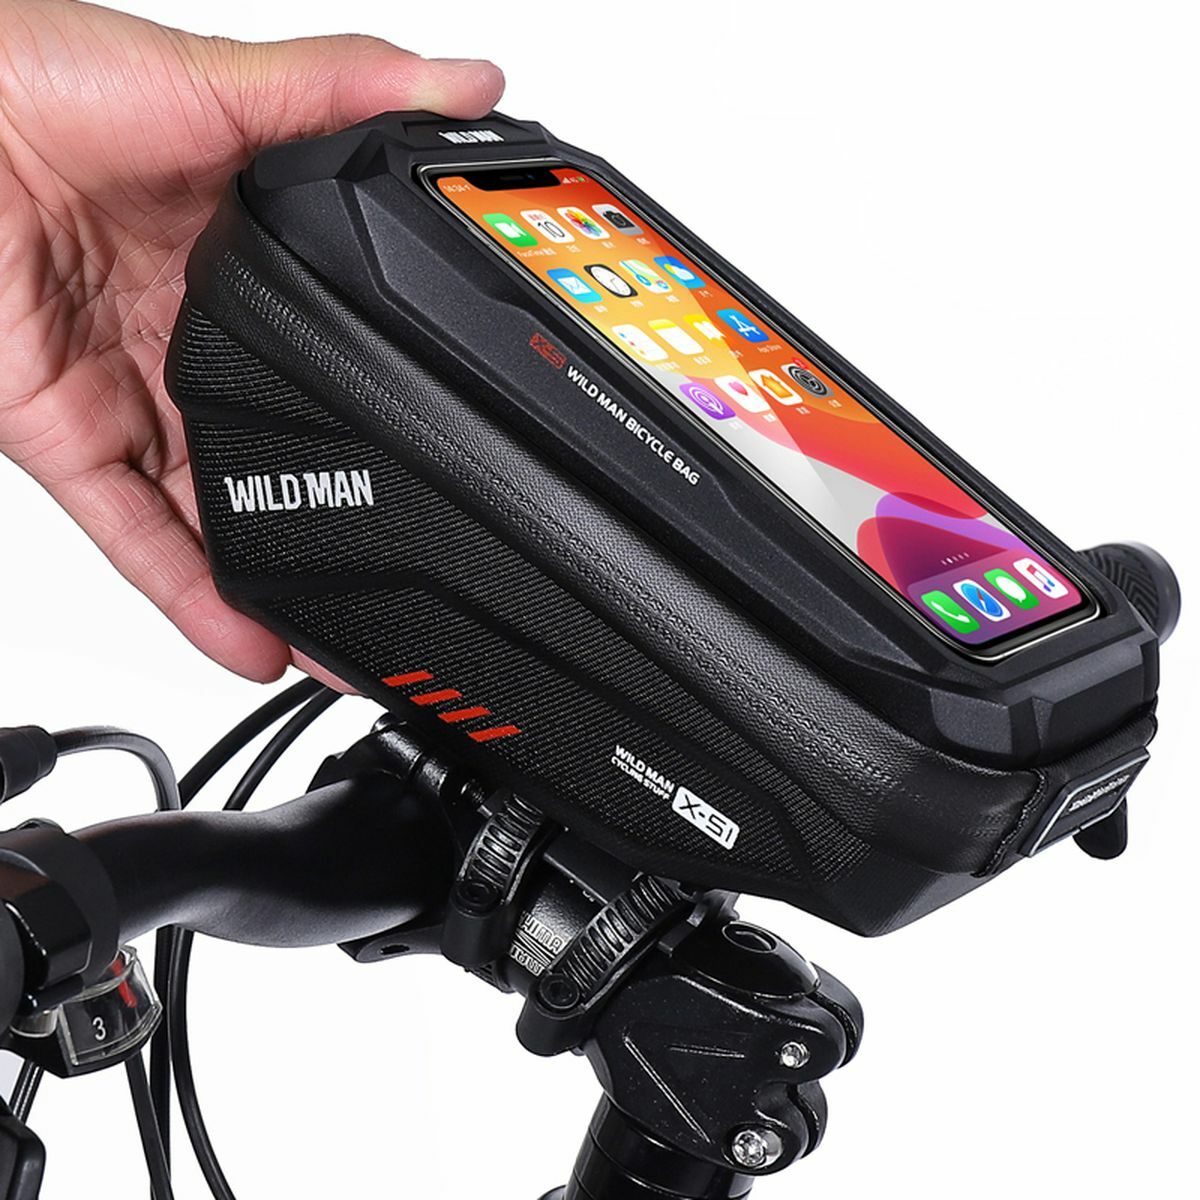 Kép 4/6 - WILDMAN Bicycle Bag XS1 kormányra szerelhető, vízálló, merevfalú kerékpáros táska telefontartóval  4.8", 1L, fekete WILDMAN-XS1-1L